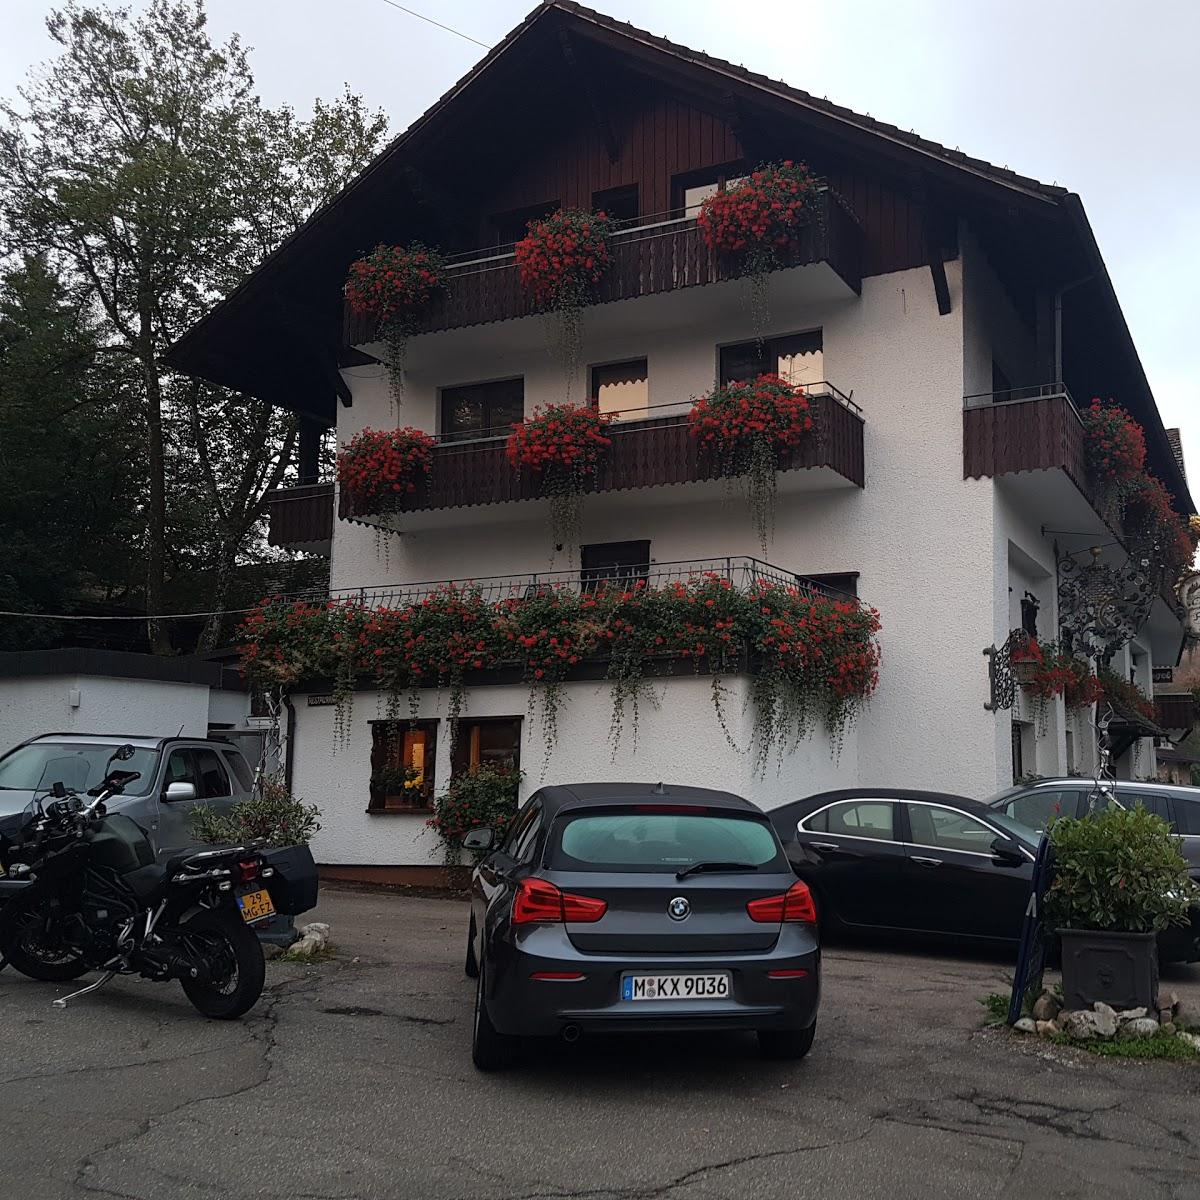 Restaurant "Alemannenhof Hotel Engel" in  Rickenbach